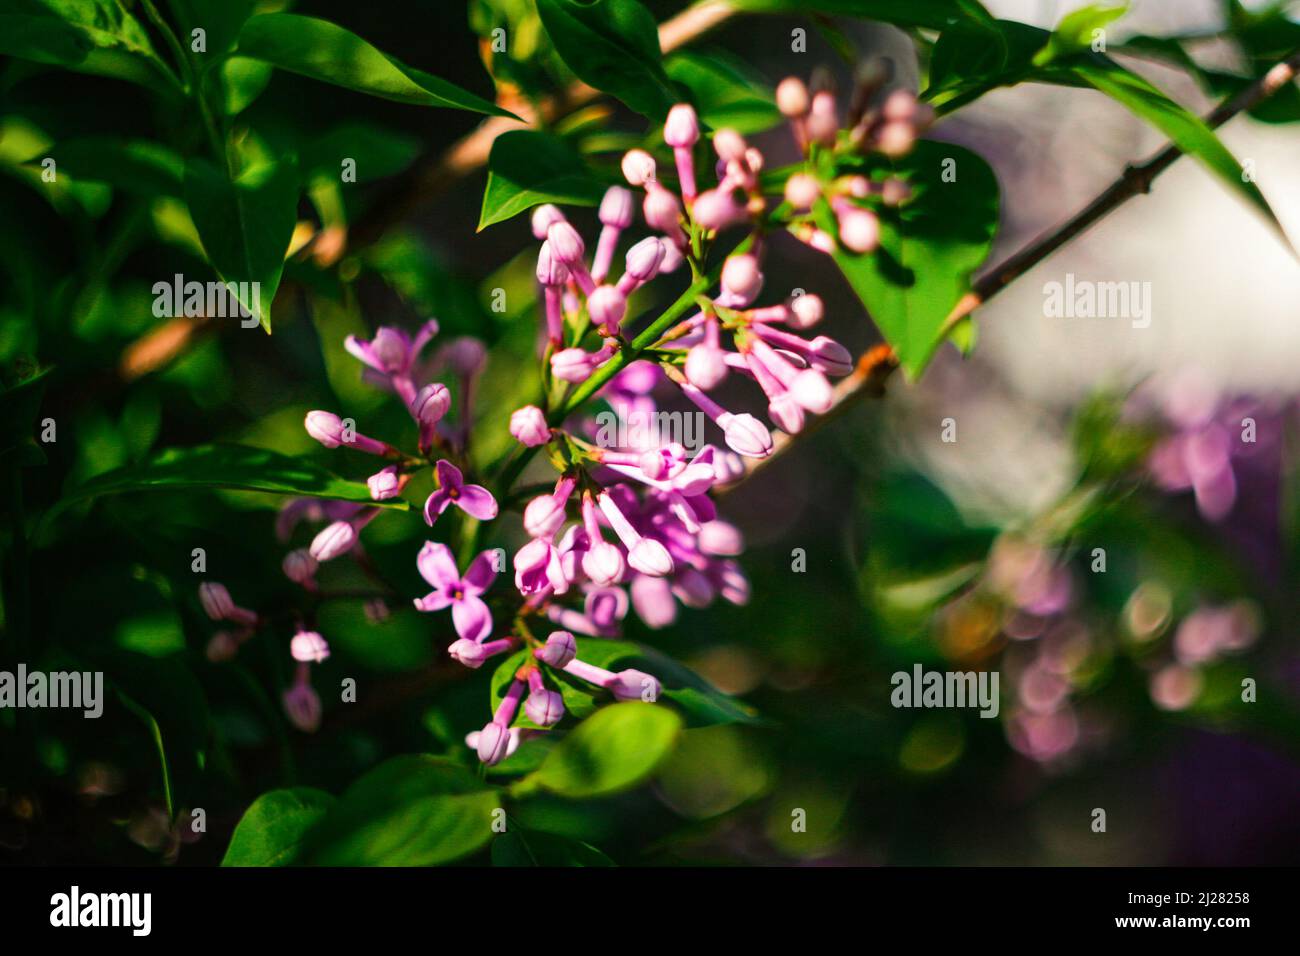 Effet de flou artistique magnifique branche de fleurs lilas sur fond vert, fond naturel de source. Nature arrière-plan flou dans le jardin. Hors foyer. Banque D'Images